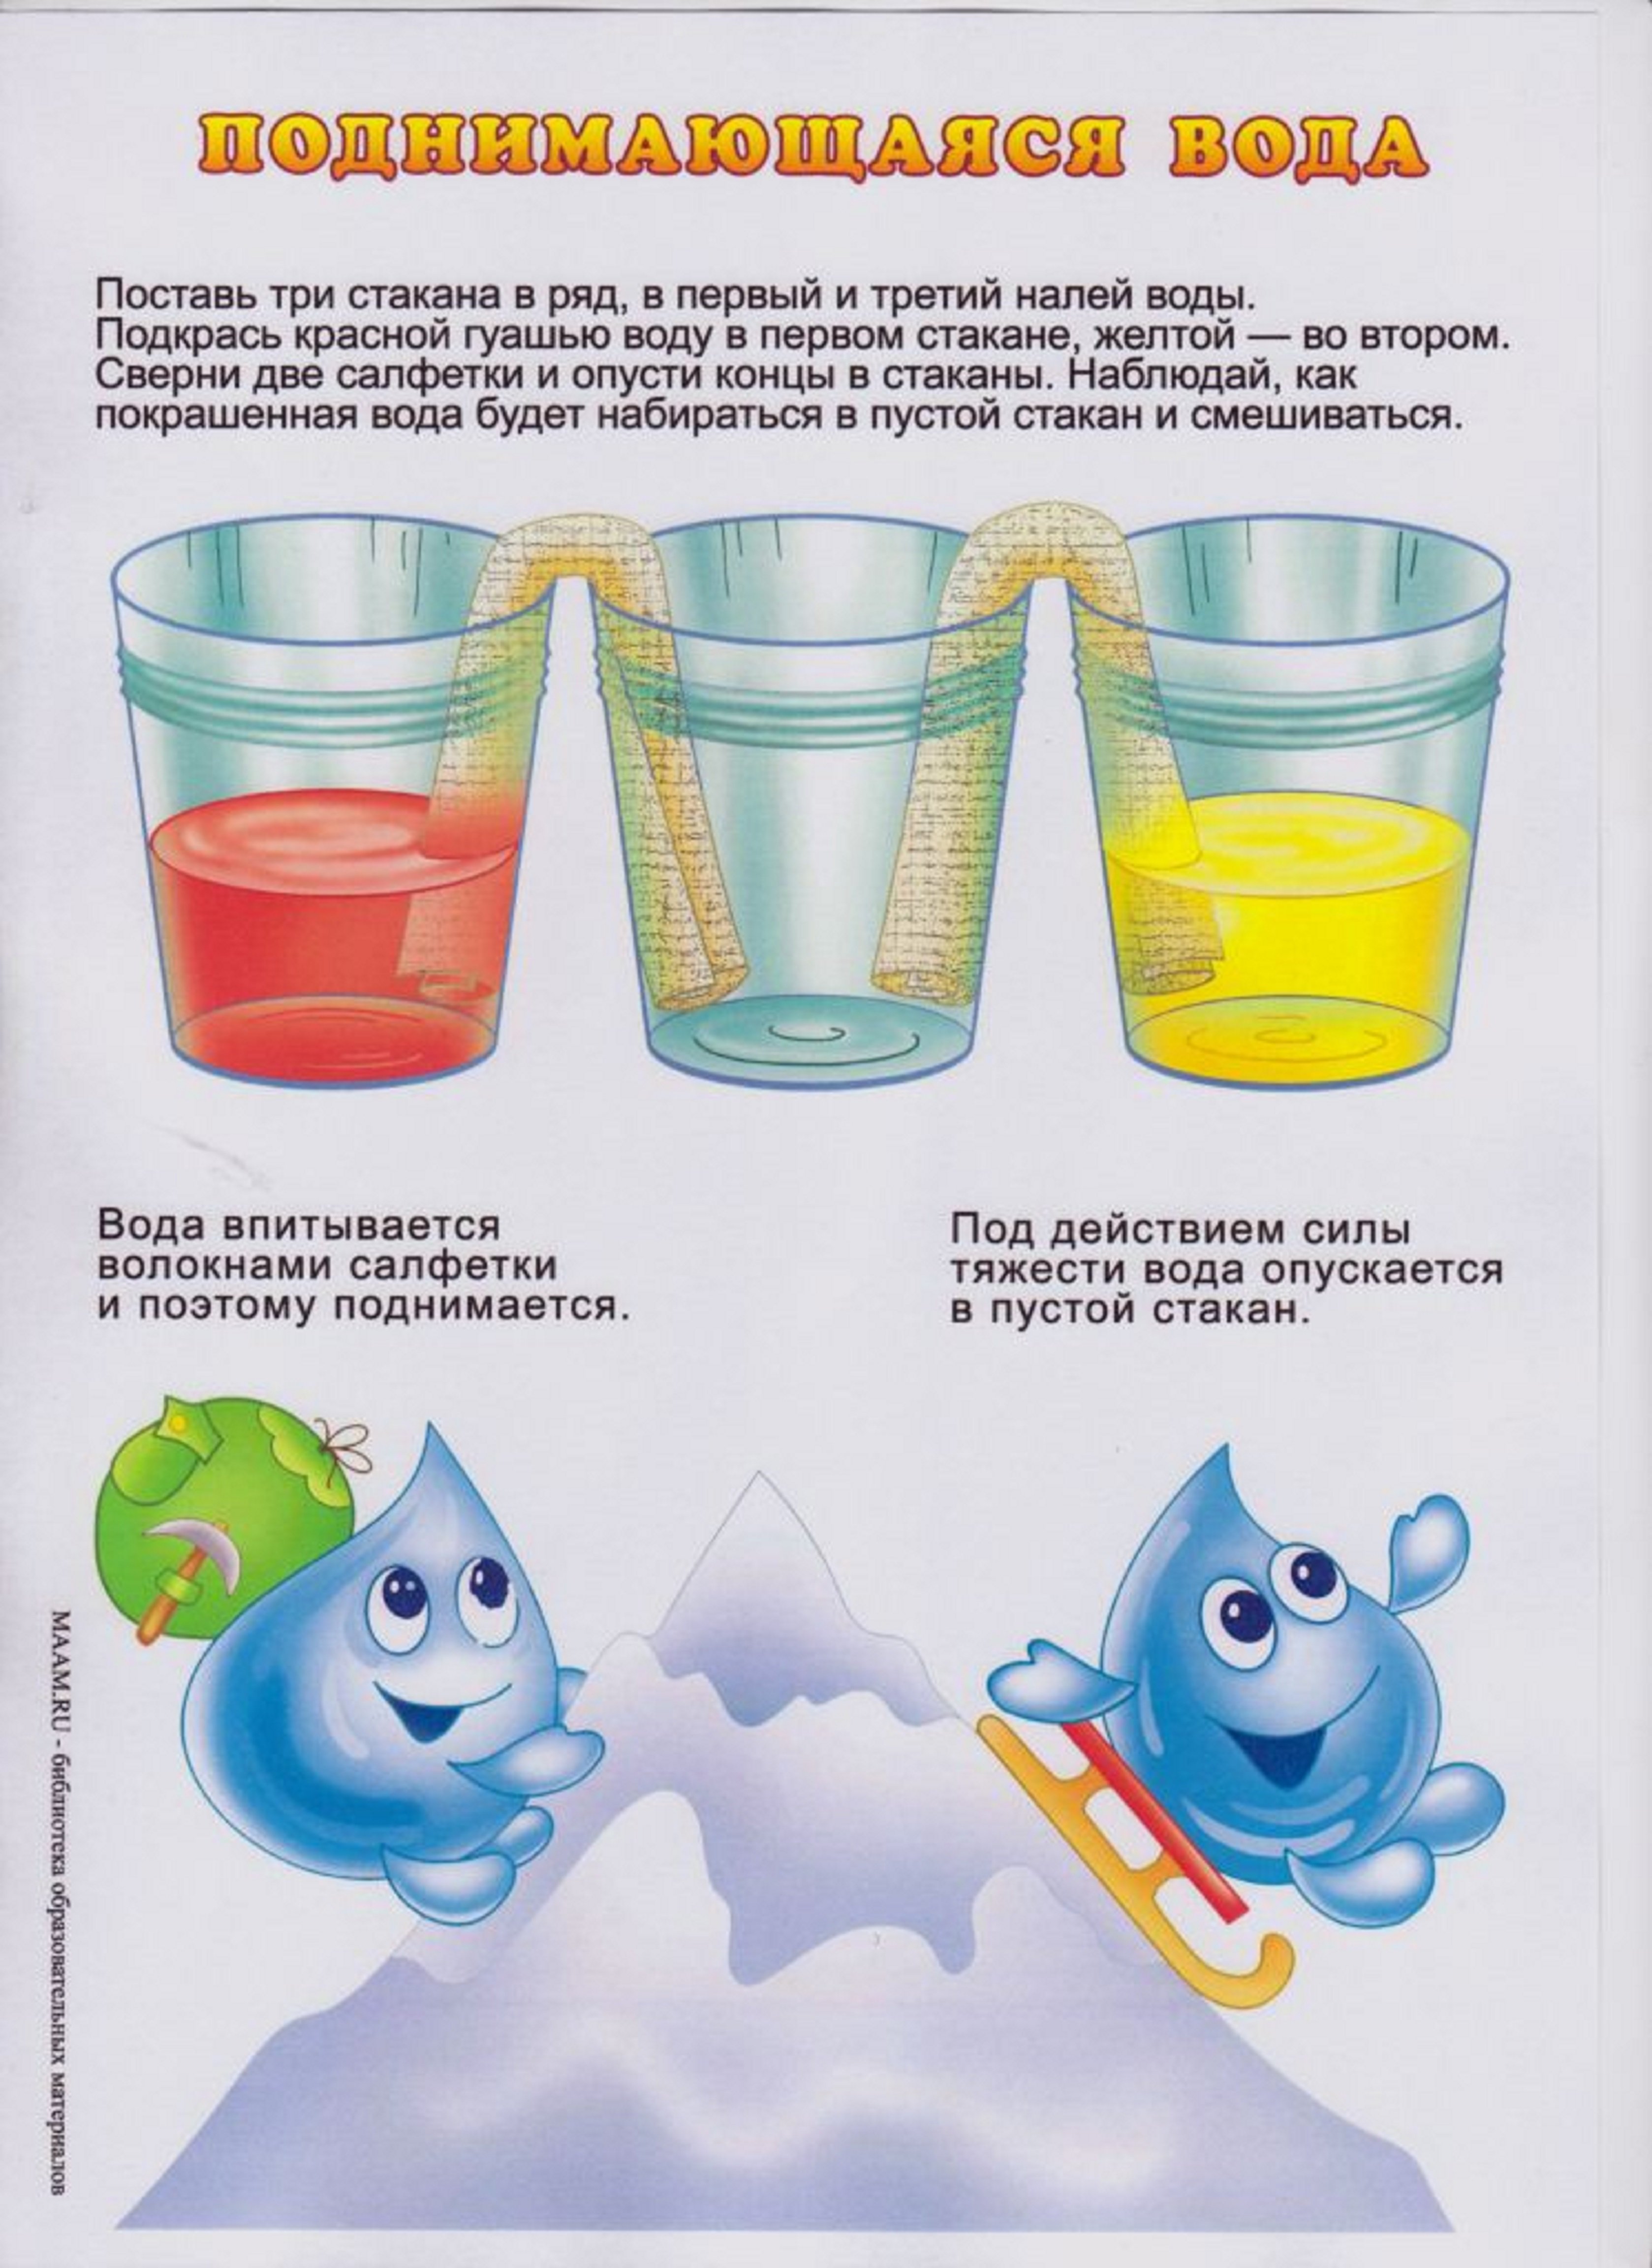 Опыт с водой для ребенка 4 лет